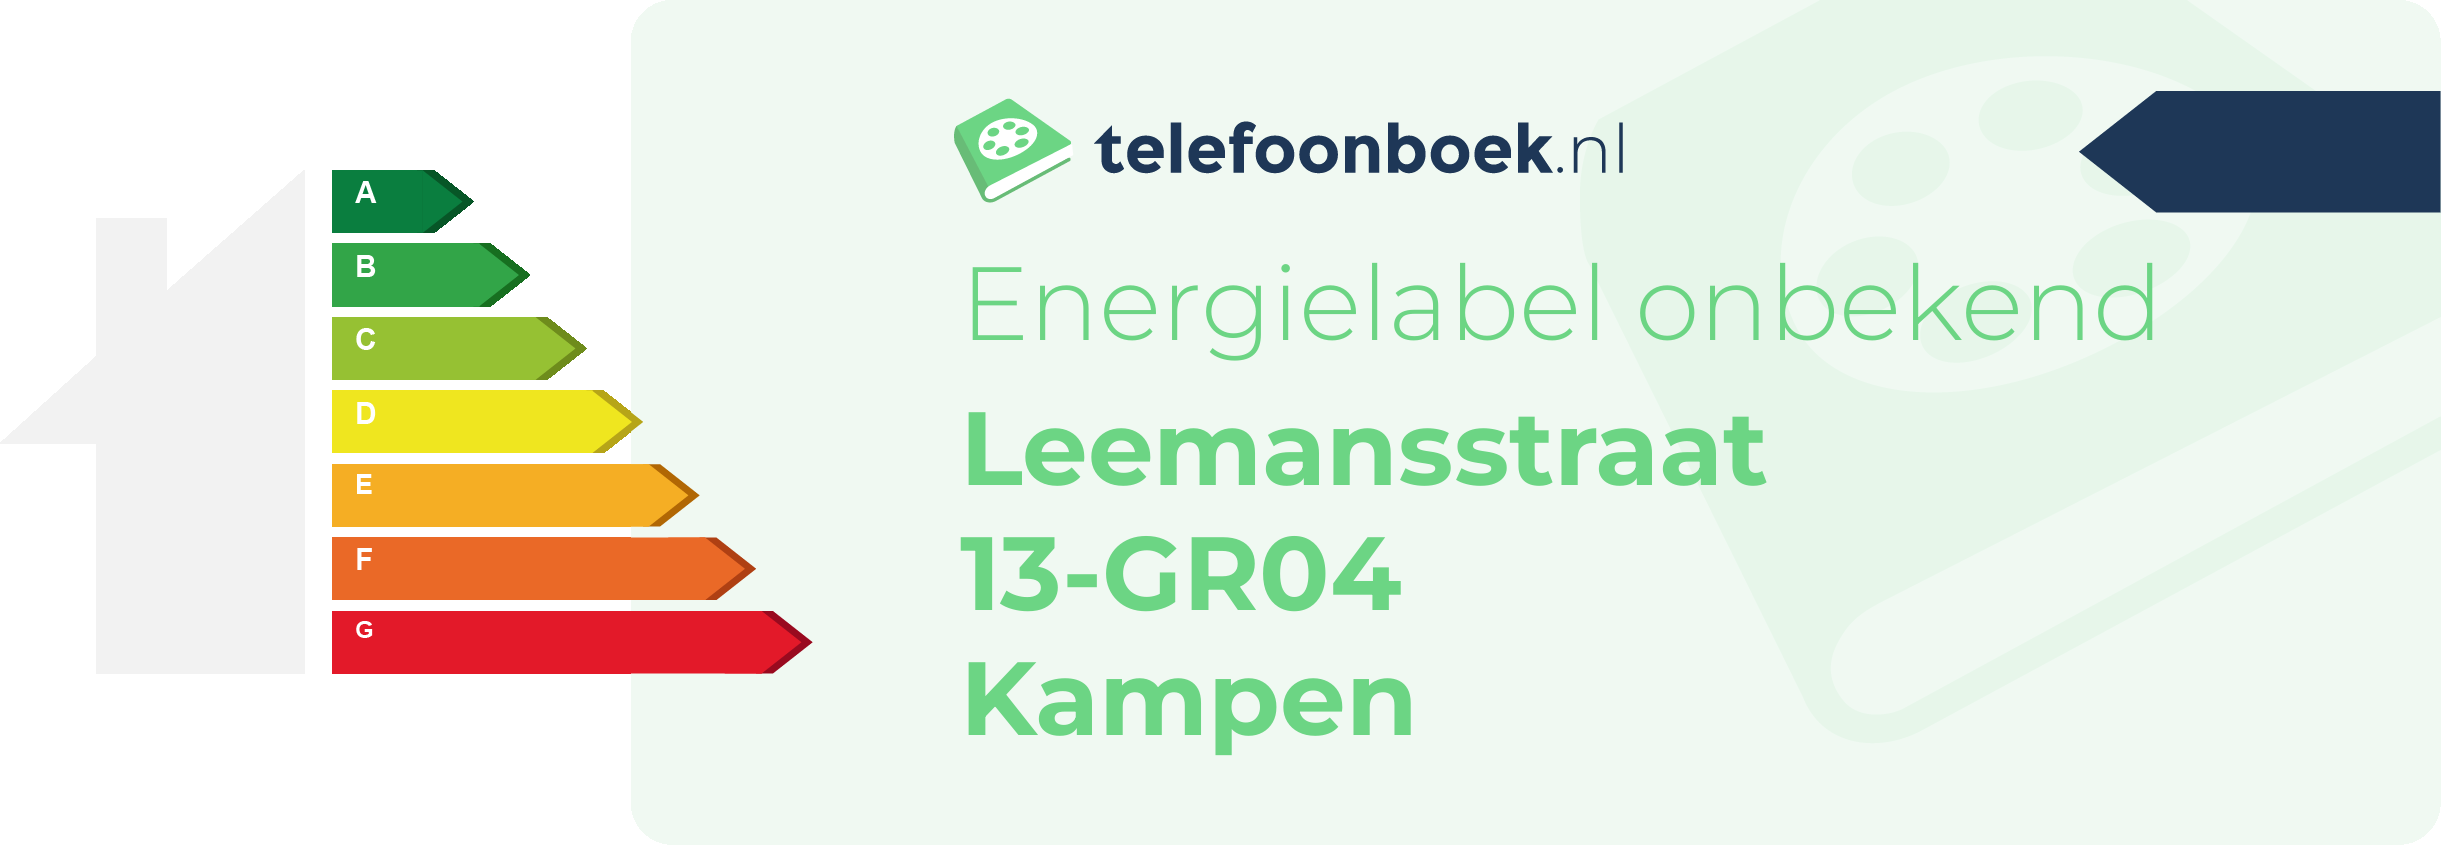 Energielabel Leemansstraat 13-GR04 Kampen